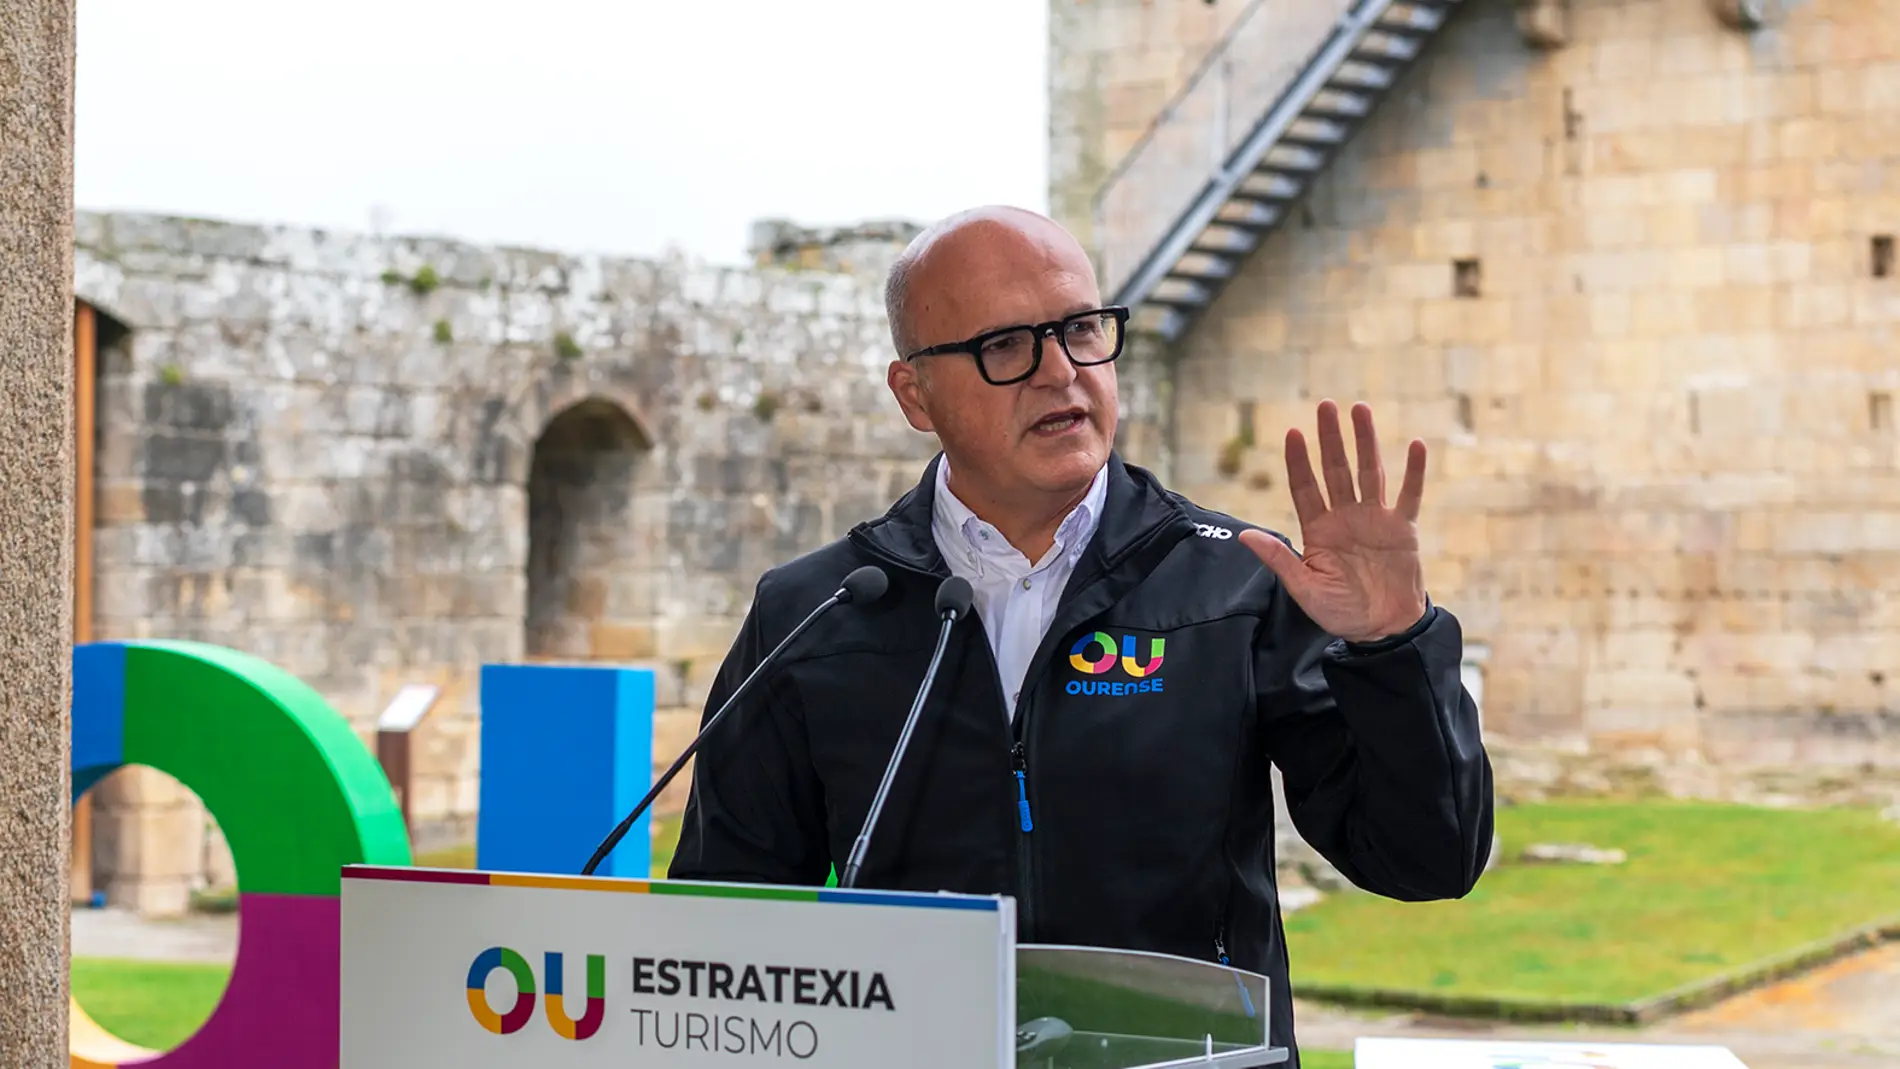 A provincia de Ourense lanza a súa marca e estratexia turística ante a chegada do AVE